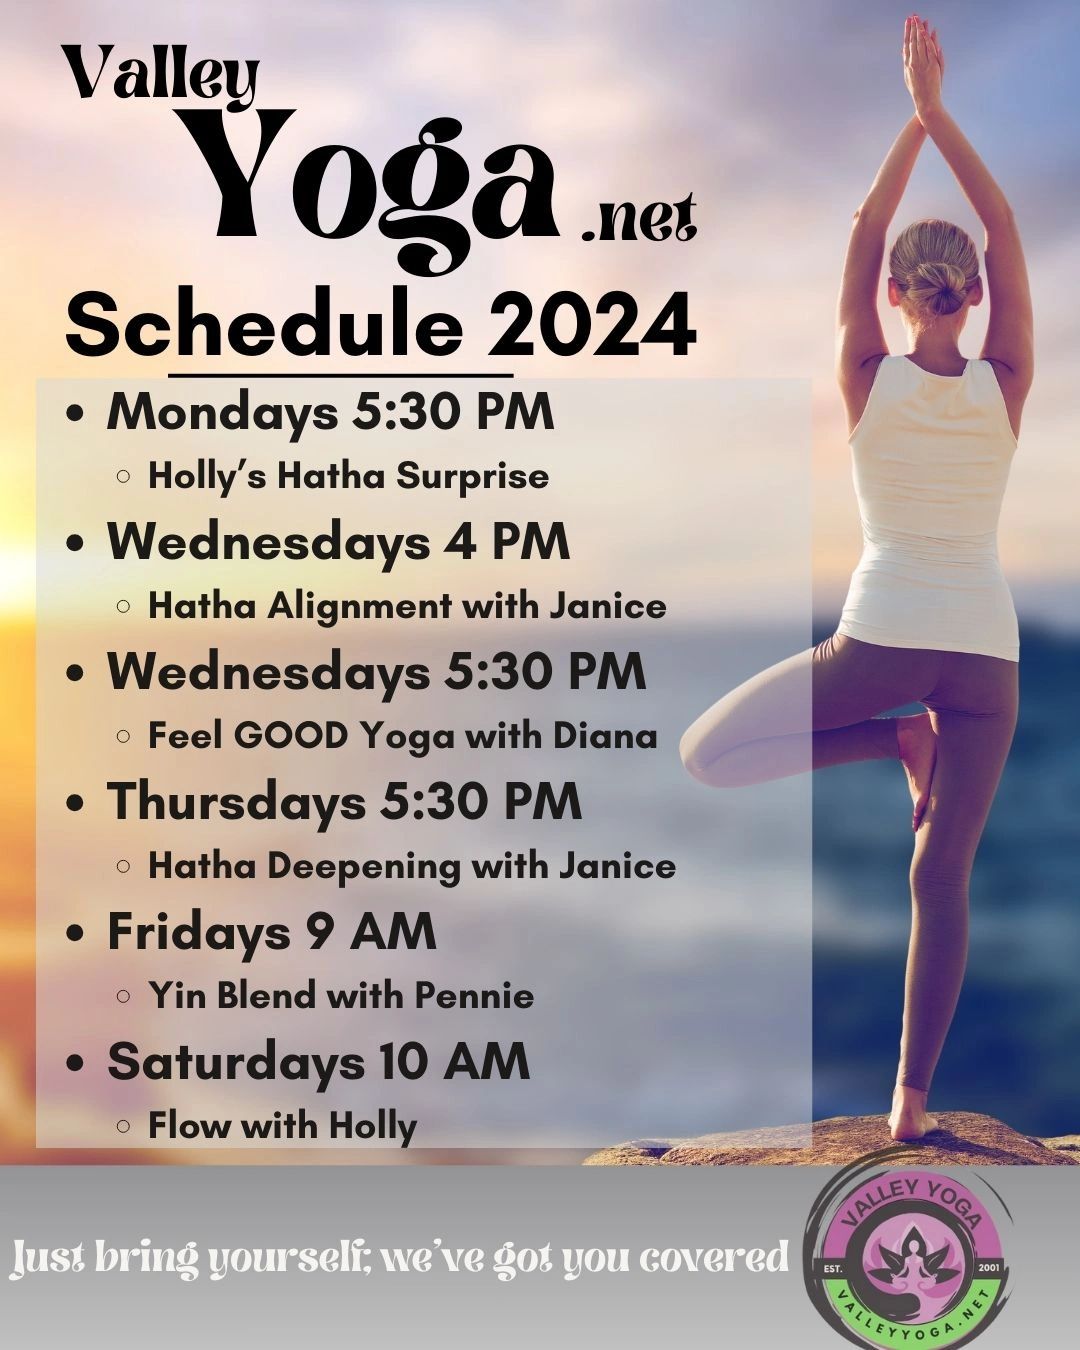 Class Schedule - Etowah Valley Yoga - Etowah Valley Yoga